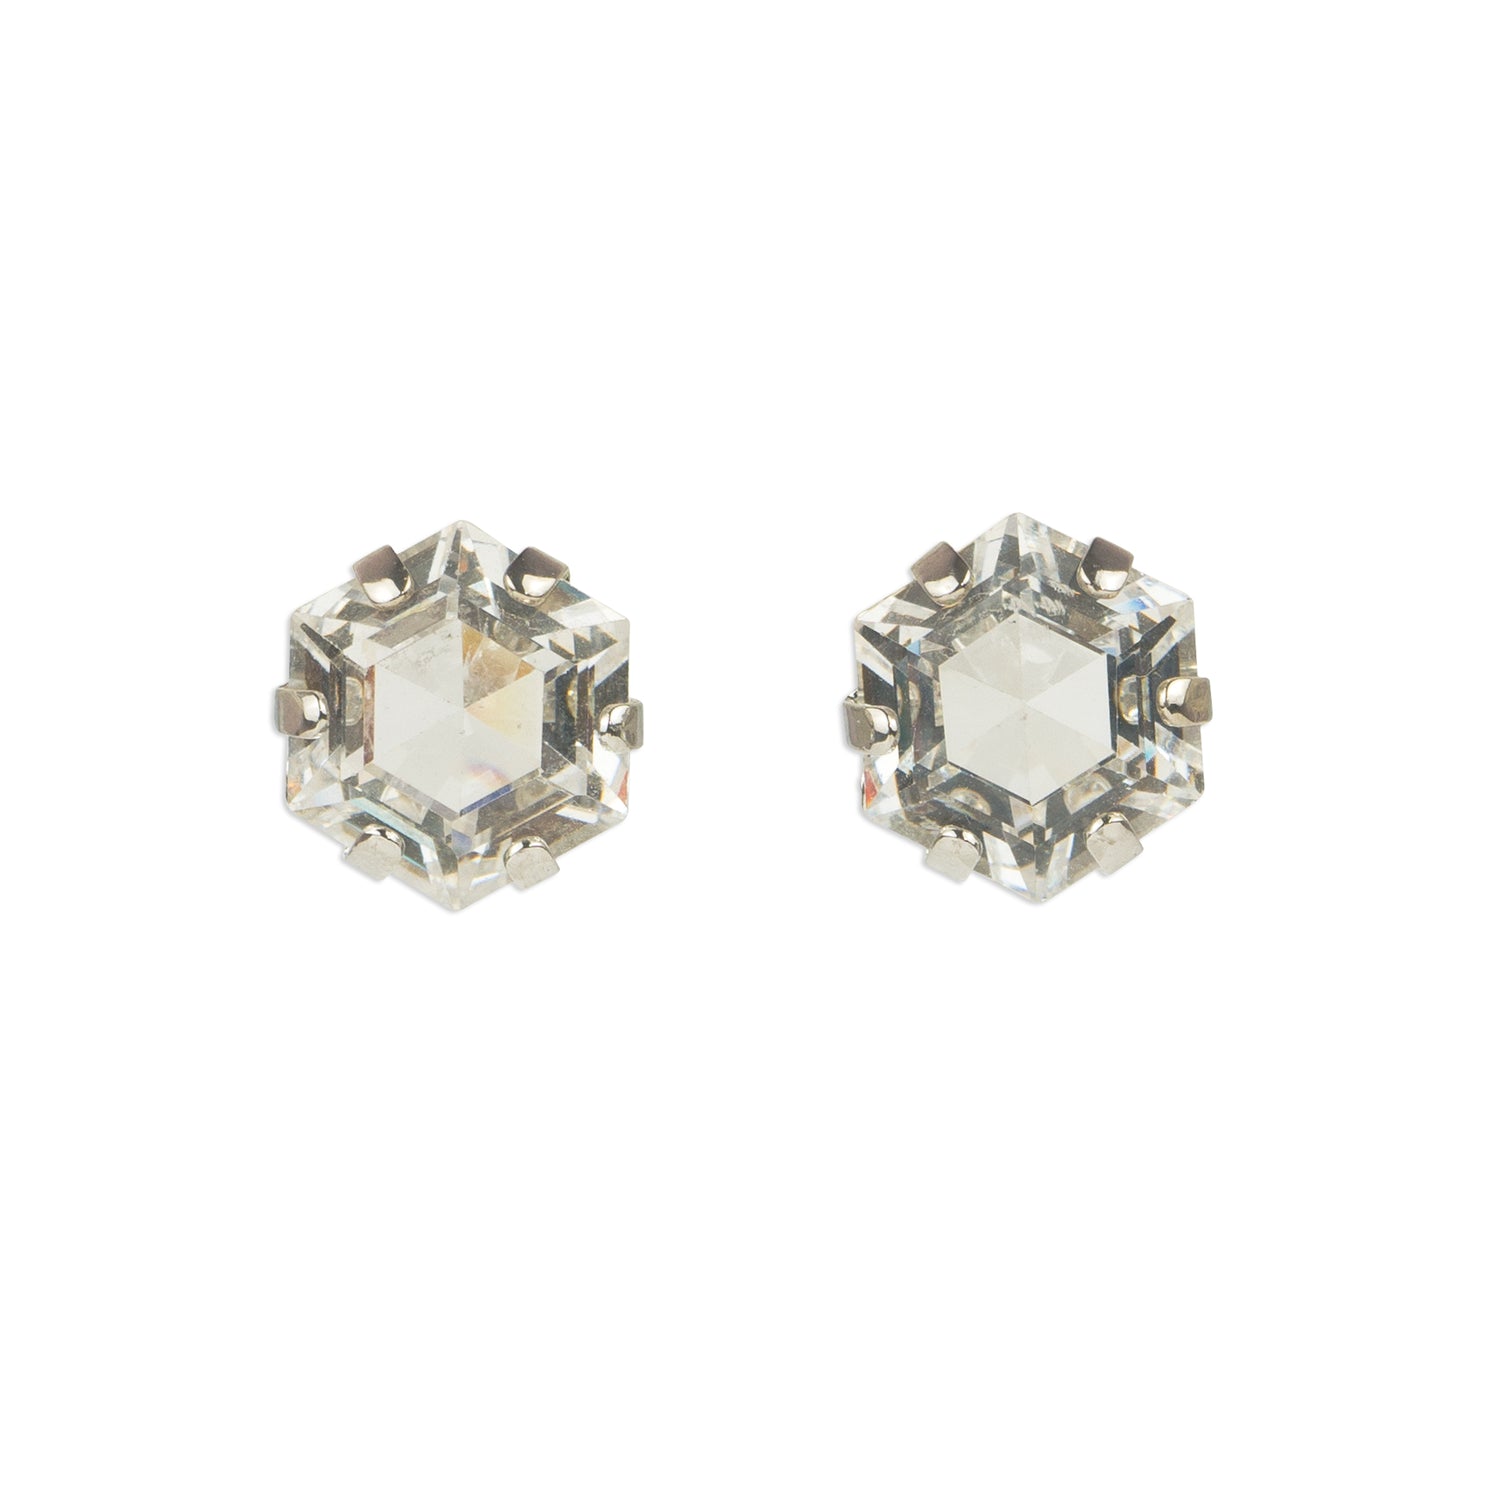 Stud earrings with Swarovski crystal